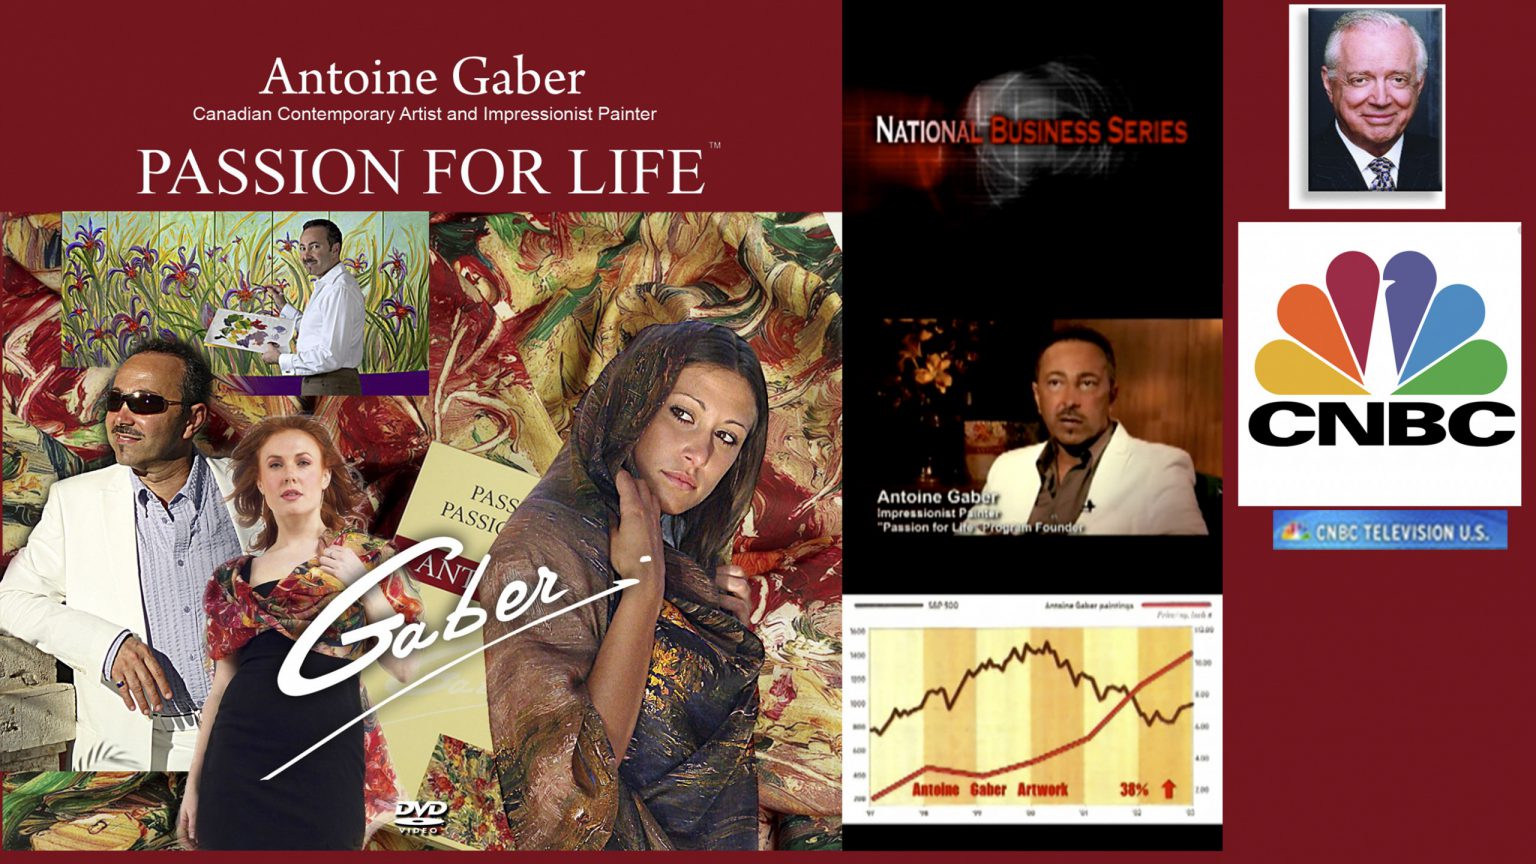 Le 7 septembre 2008, une courte séquence d’une biographie documentaire éducative d’Antoine Gaber a été mise à l’antenne et a été diffusée à travers les États-Unis sur le réseau CNBC dans plus de 90 millions de foyers et plus de 300 marchés.